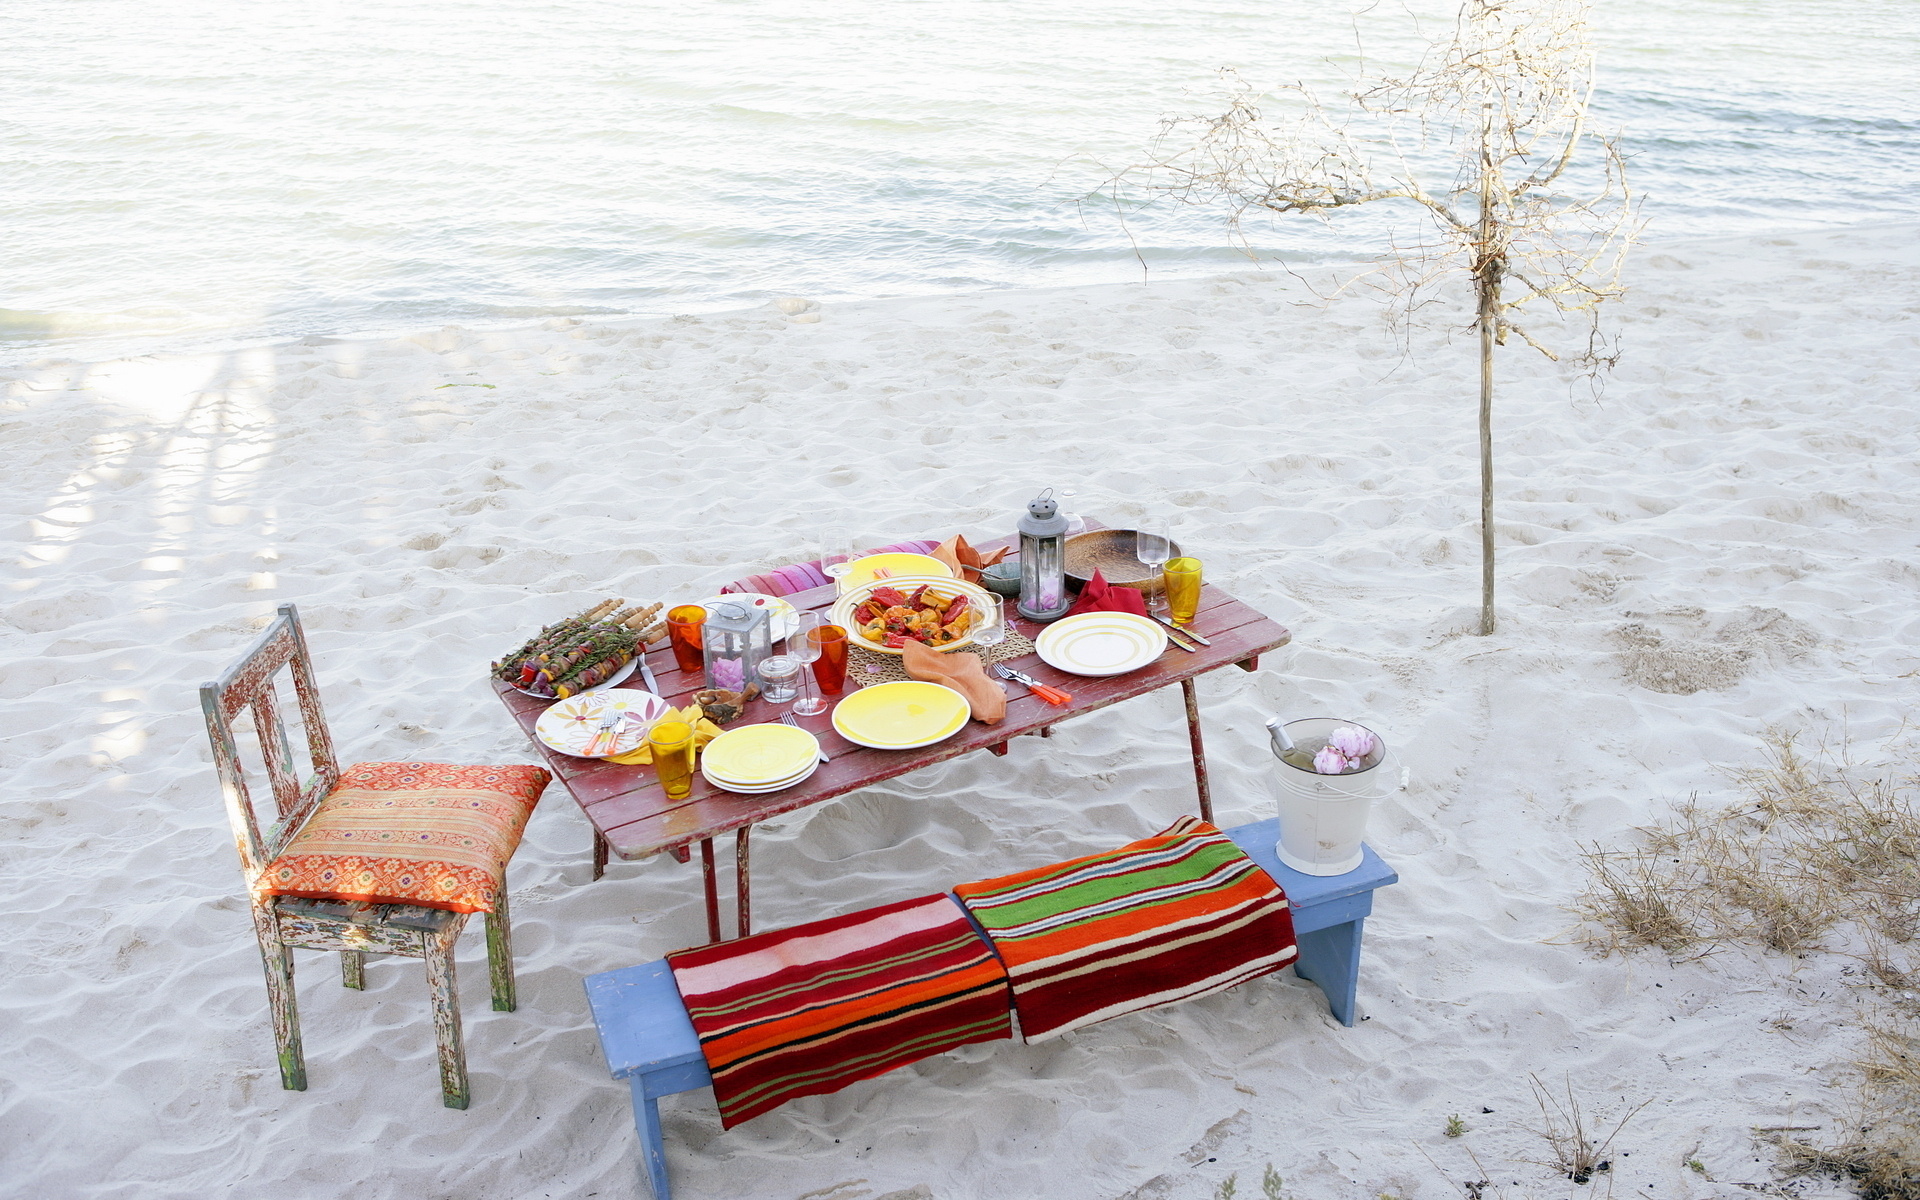 Пикник на пляже